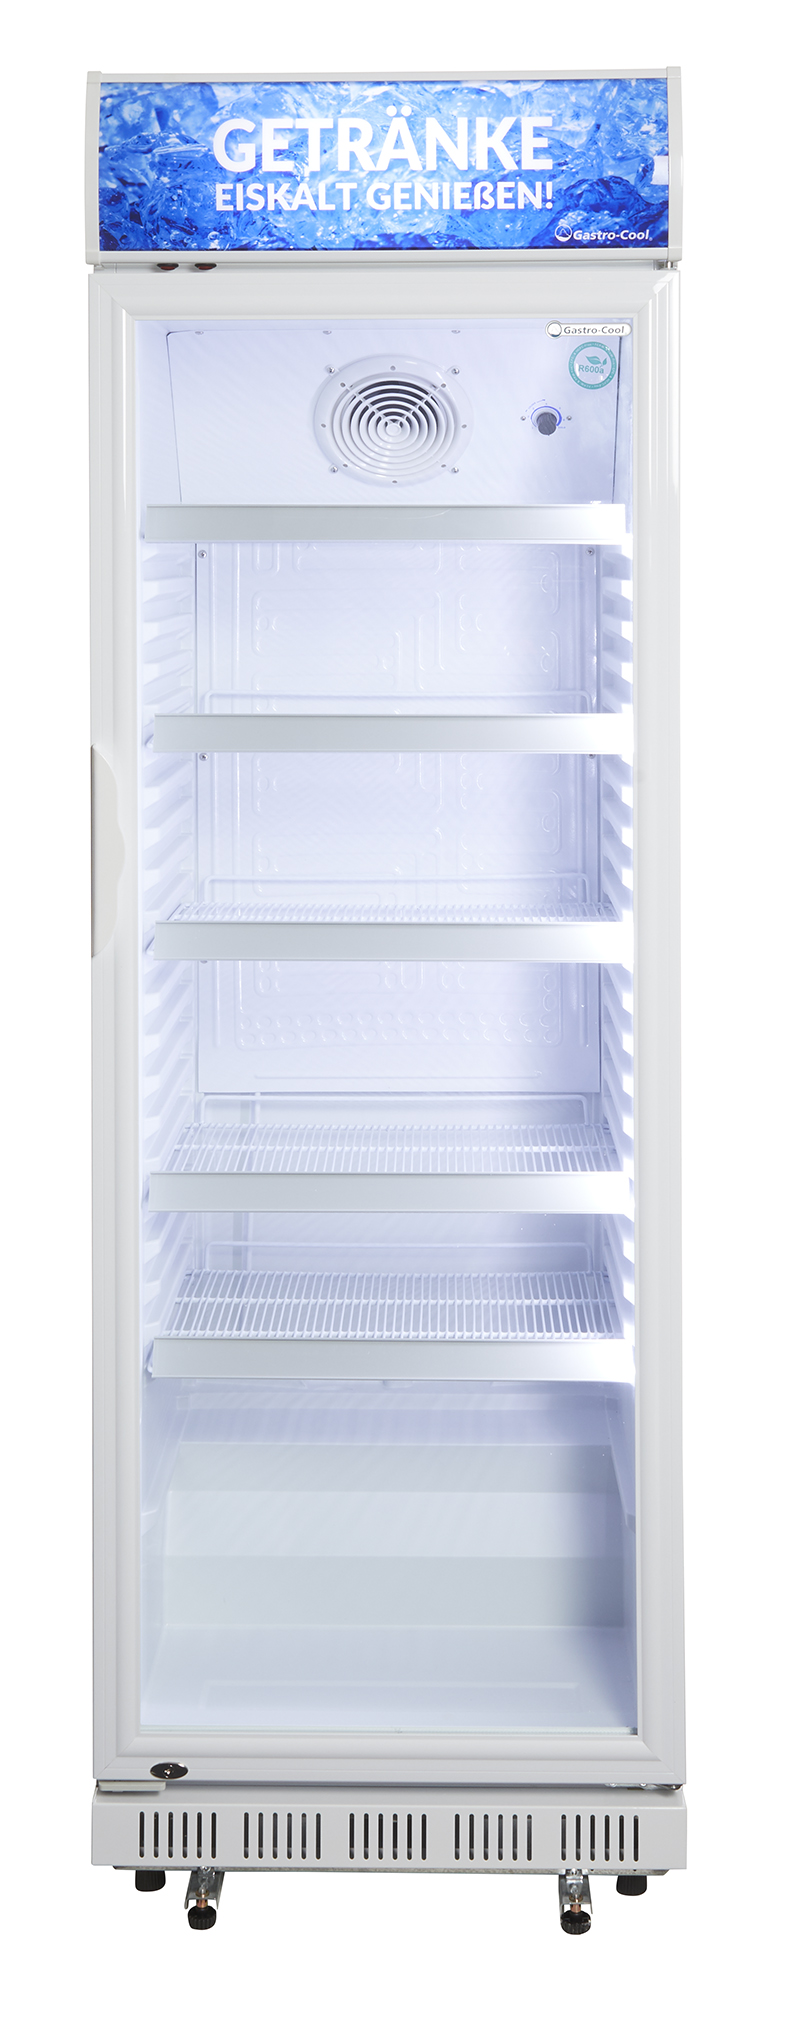 Gastro-Cool - Glastürkühlschrank mit Werbedisplay - weiß - GCDC400 - Frontansicht leer